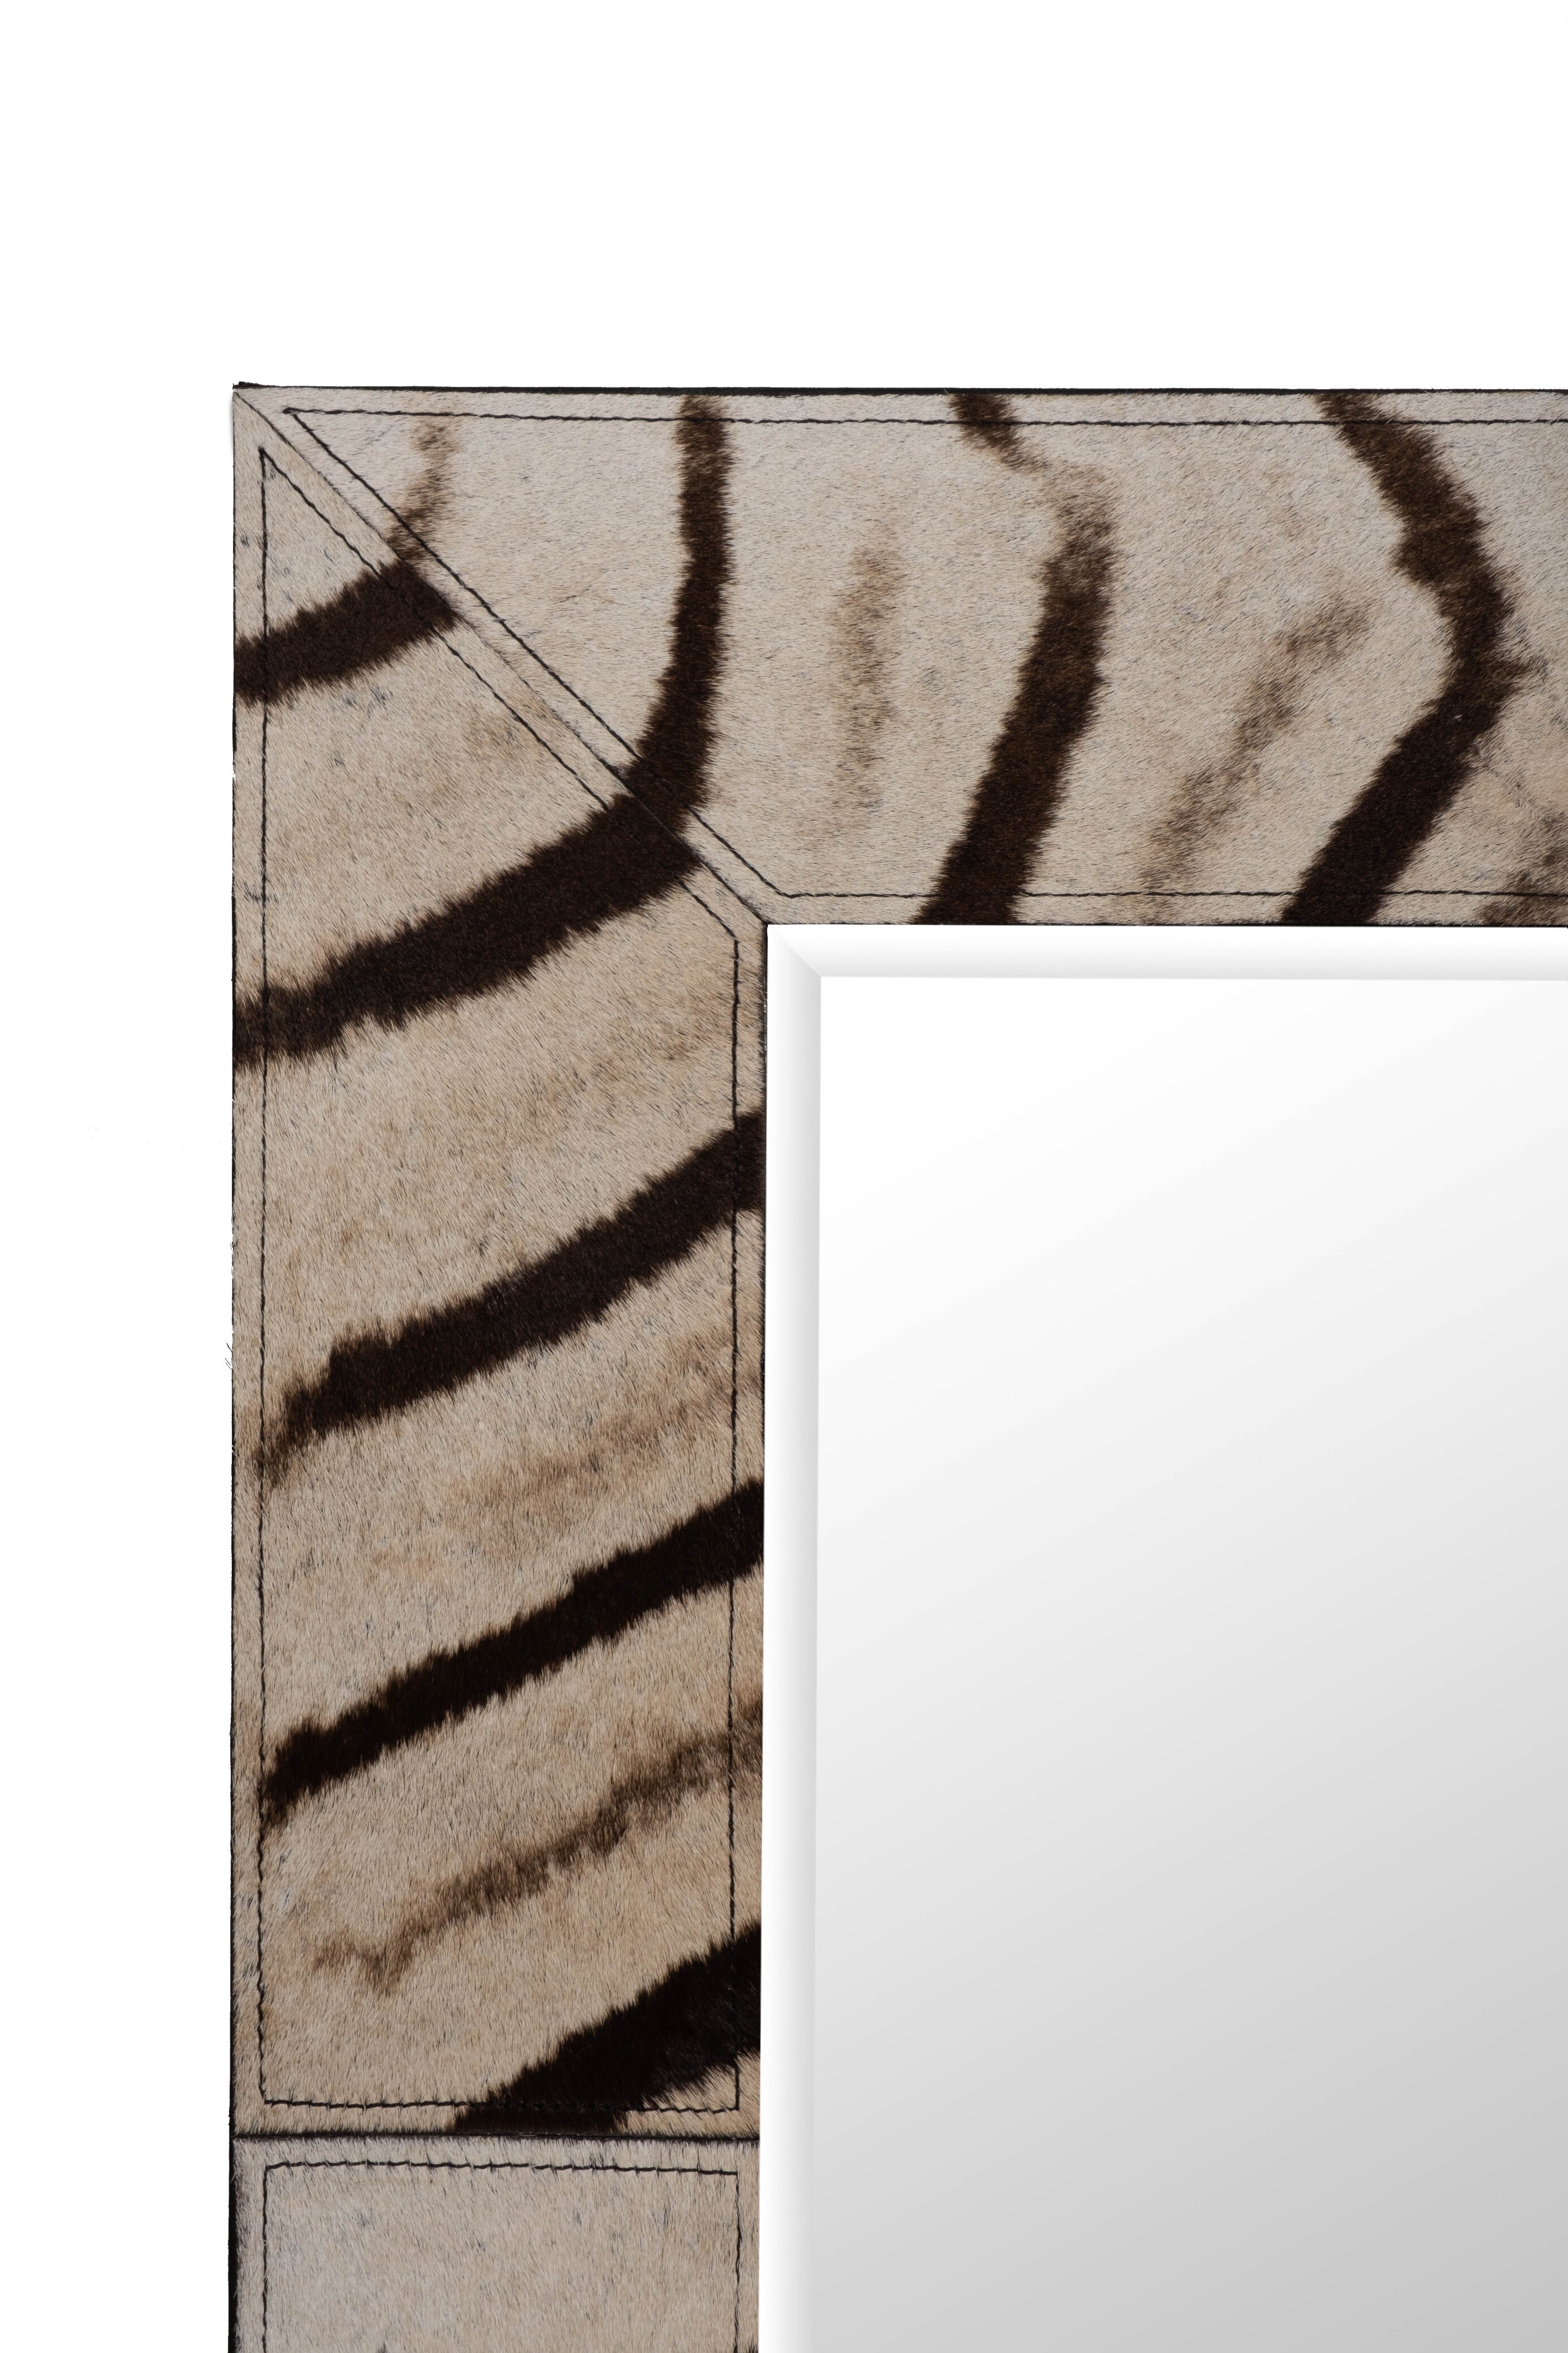 Zebra Hide Rectangle Mirror - Small